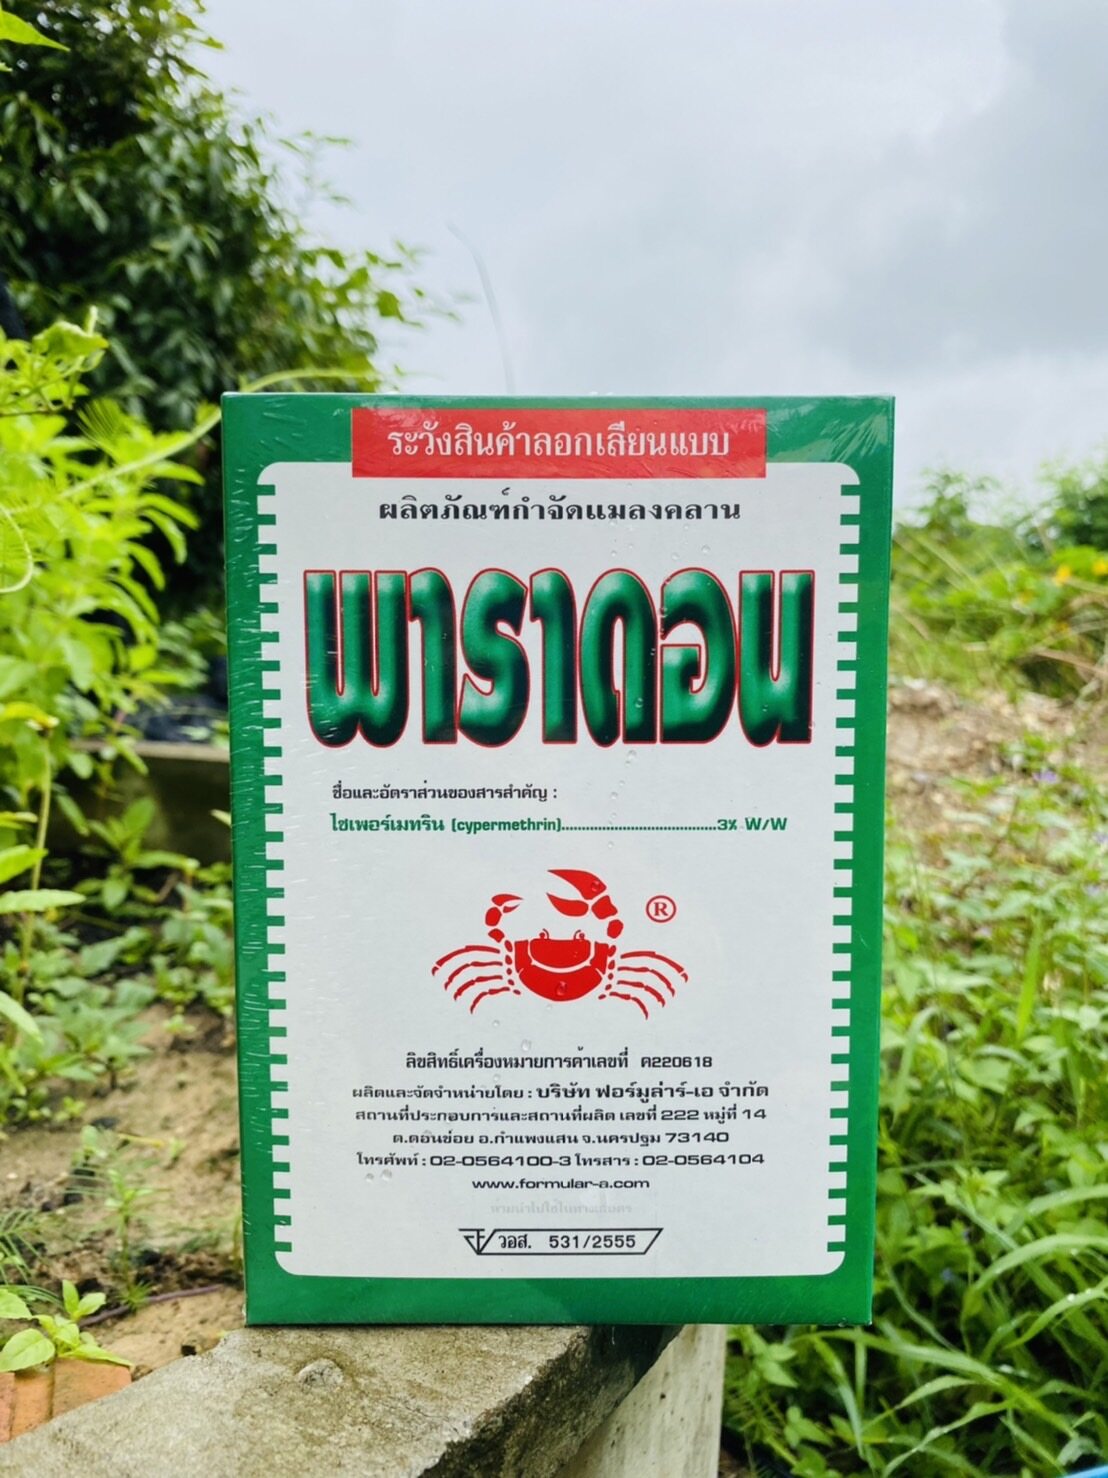 พาราดอน(ยาปู)ผลอตภัณฑ์กำจัดแมลงคลานในบ้านเรือนเช่น แมลงสาบ มด  แมลงคลานทุกชนิด) - ทักษพรเกษตรพันธุ์ - Thaipick